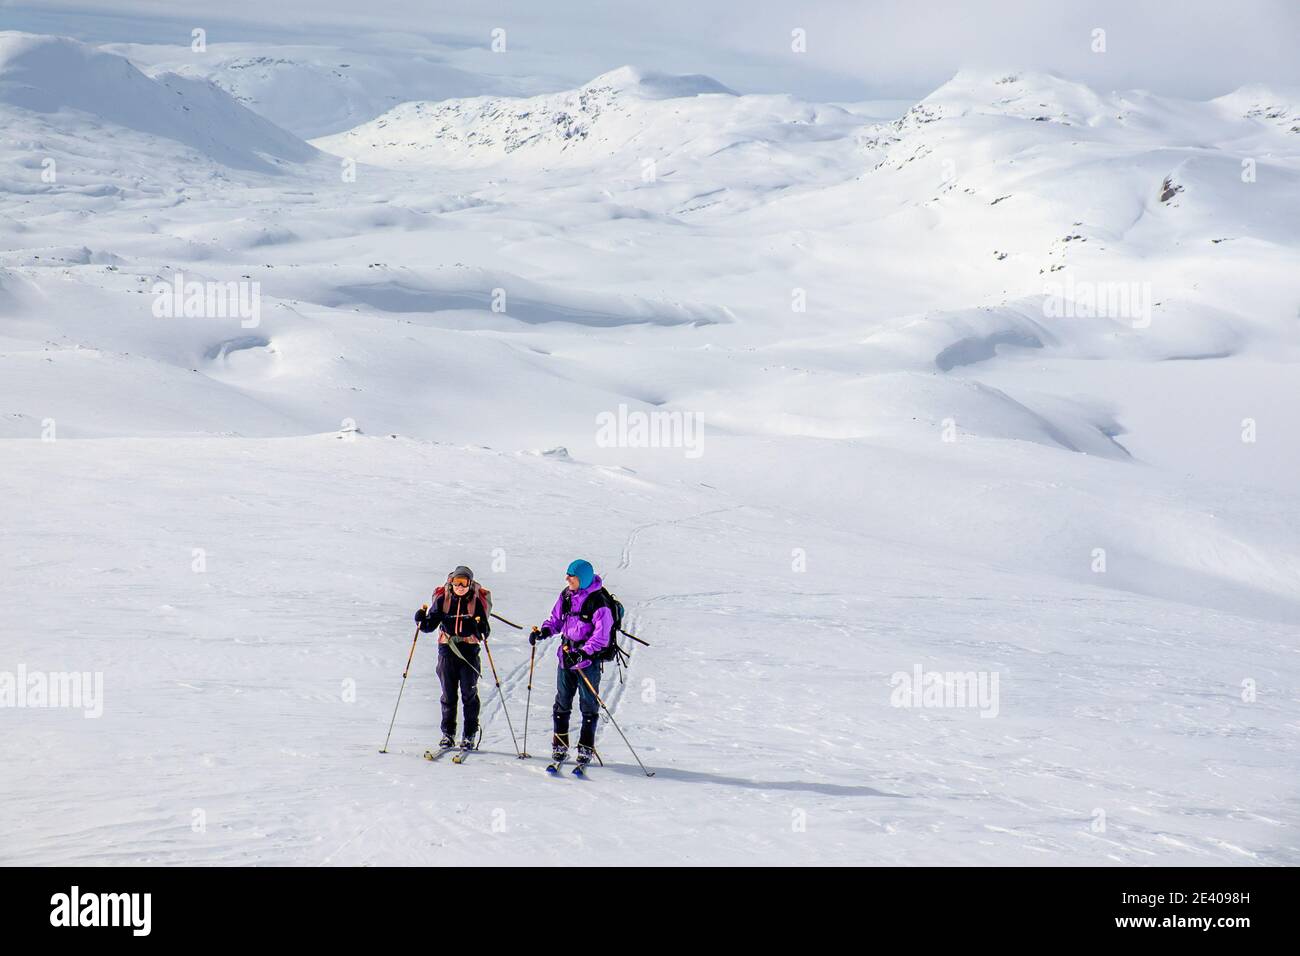 Ski touring in Norway's winter mountains Stock Photo